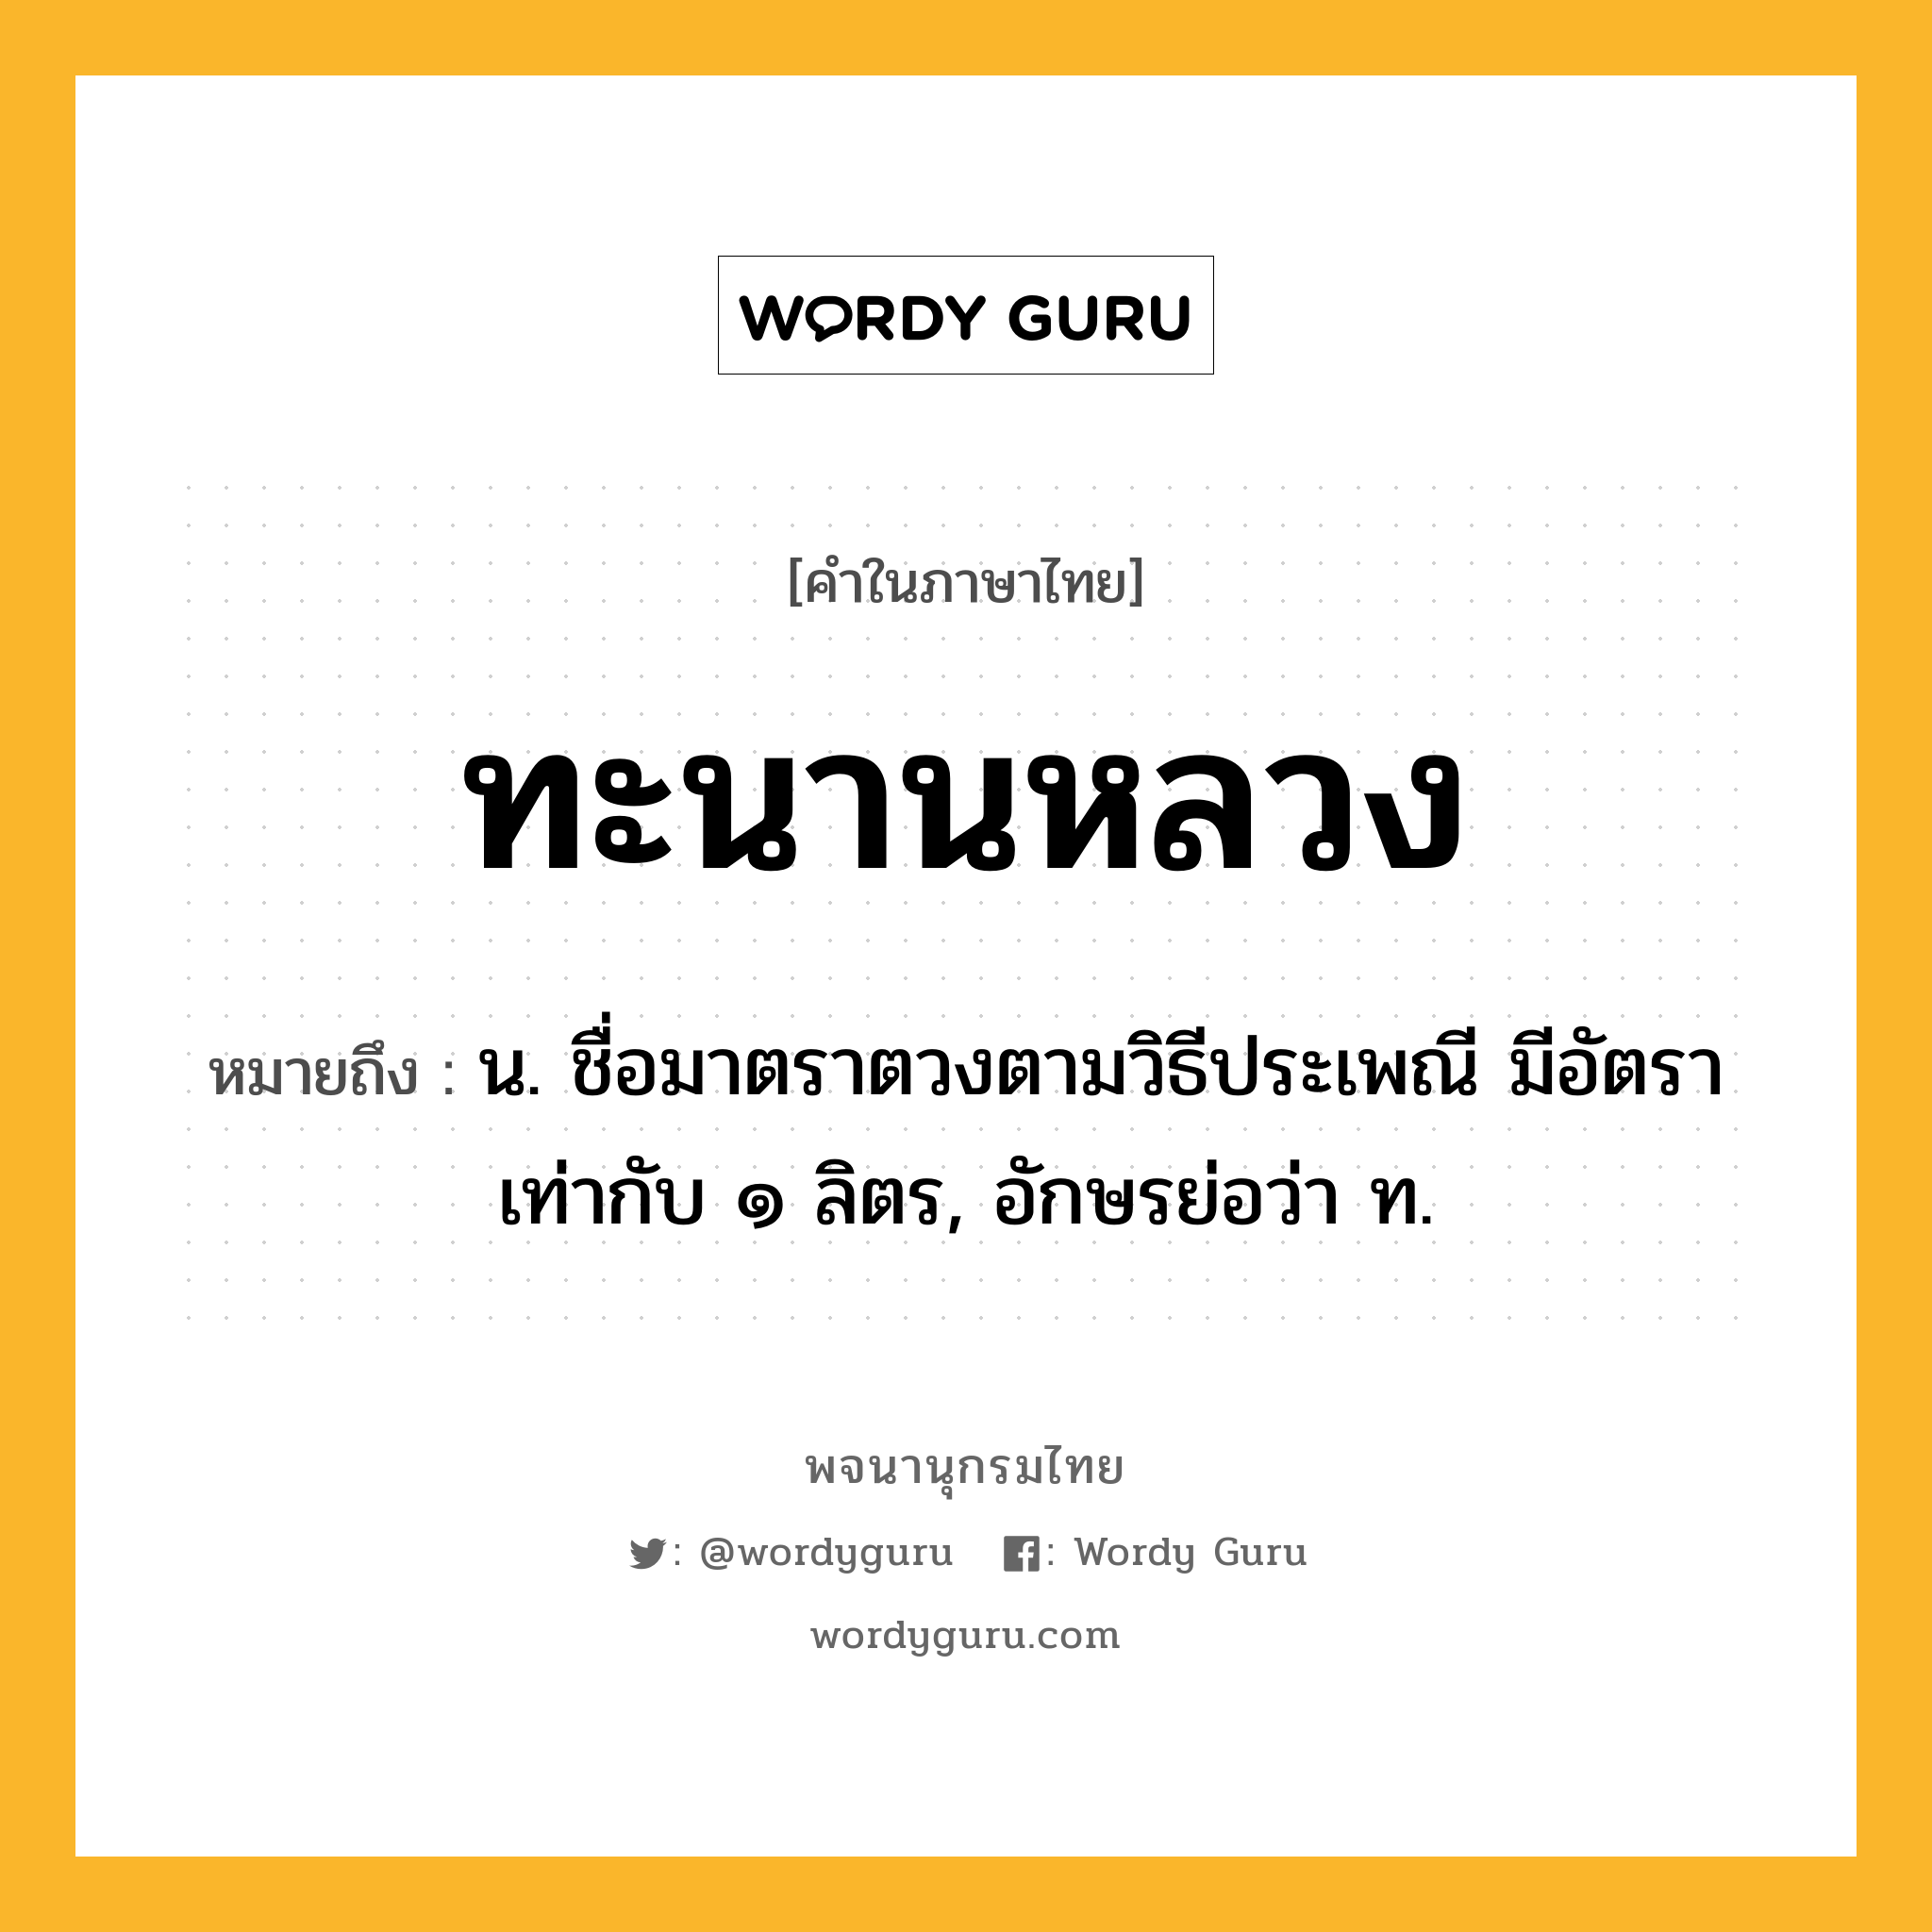 ทะนานหลวง หมายถึงอะไร?, คำในภาษาไทย ทะนานหลวง หมายถึง น. ชื่อมาตราตวงตามวิธีประเพณี มีอัตราเท่ากับ ๑ ลิตร, อักษรย่อว่า ท.